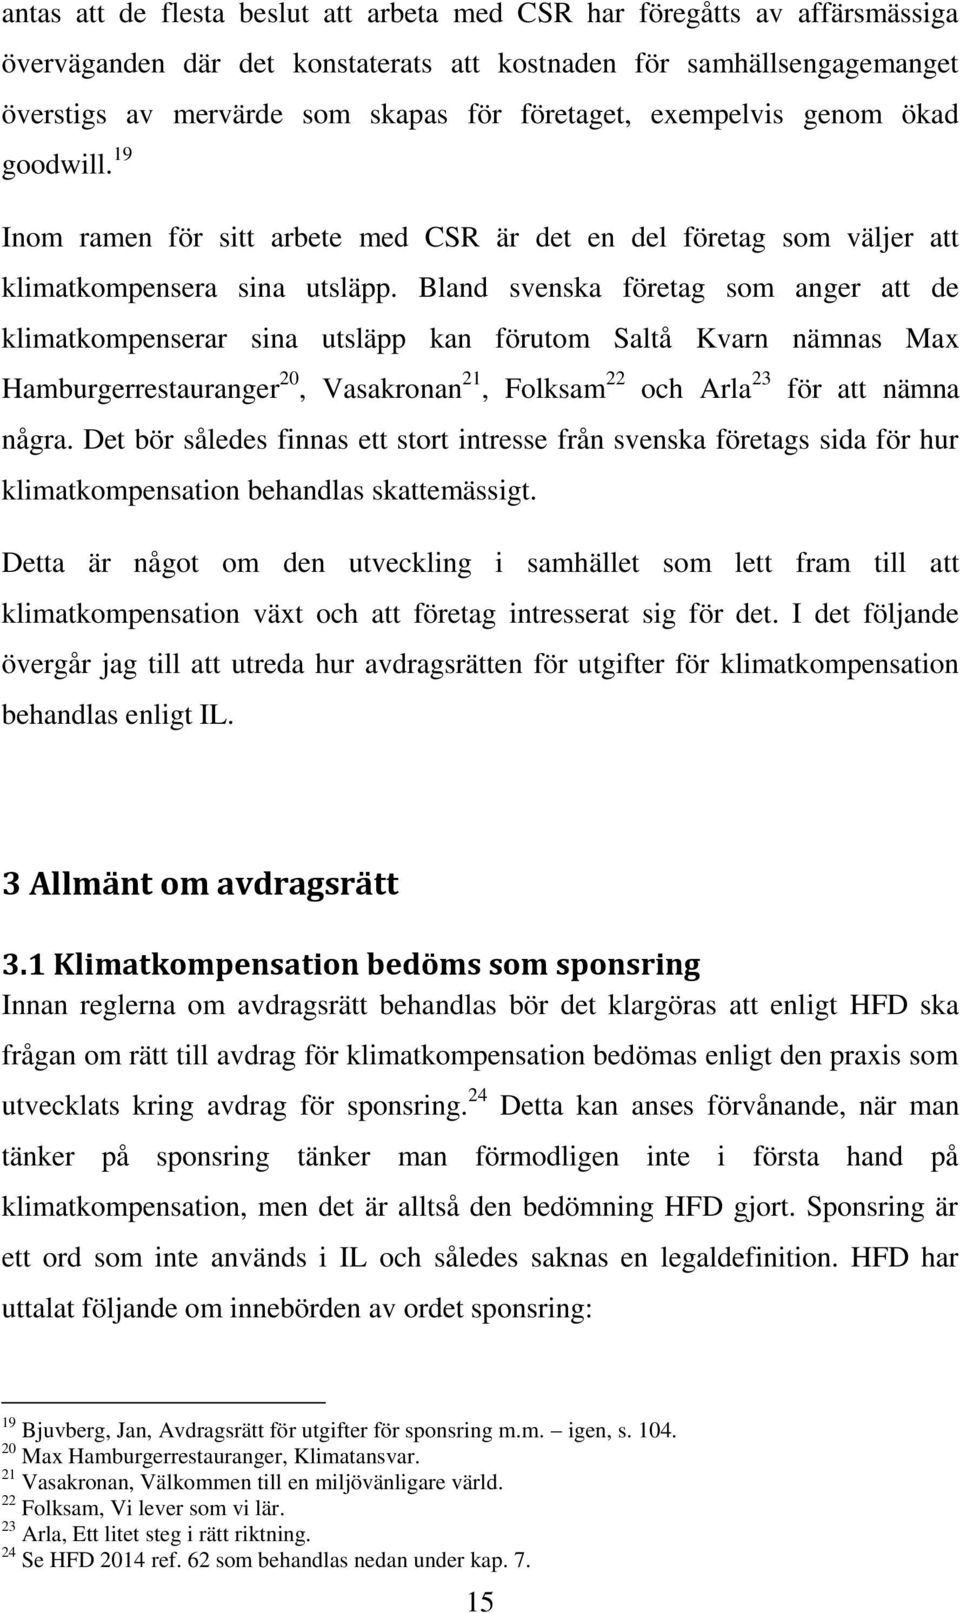 Bland svenska företag som anger att de klimatkompenserar sina utsläpp kan förutom Saltå Kvarn nämnas Max Hamburgerrestauranger 20, Vasakronan 21, Folksam 22 och Arla 23 för att nämna några.